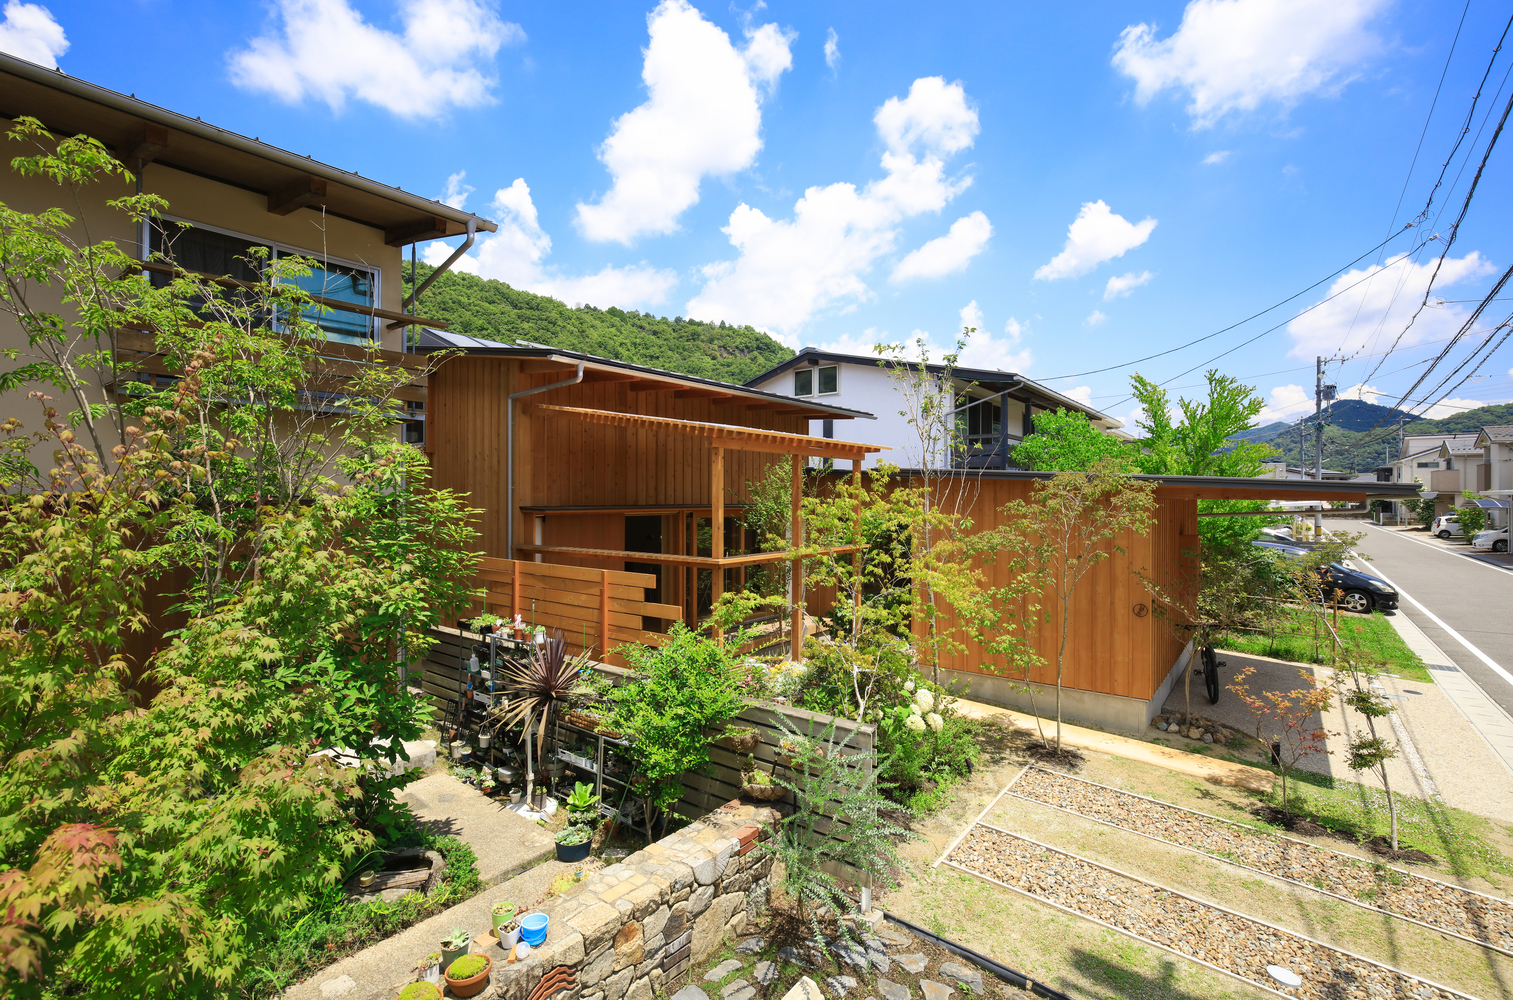 Toàn cảnh ngôi nhà nhỏ bằng gỗ có sân vườn phía trước ở Nhật Bản